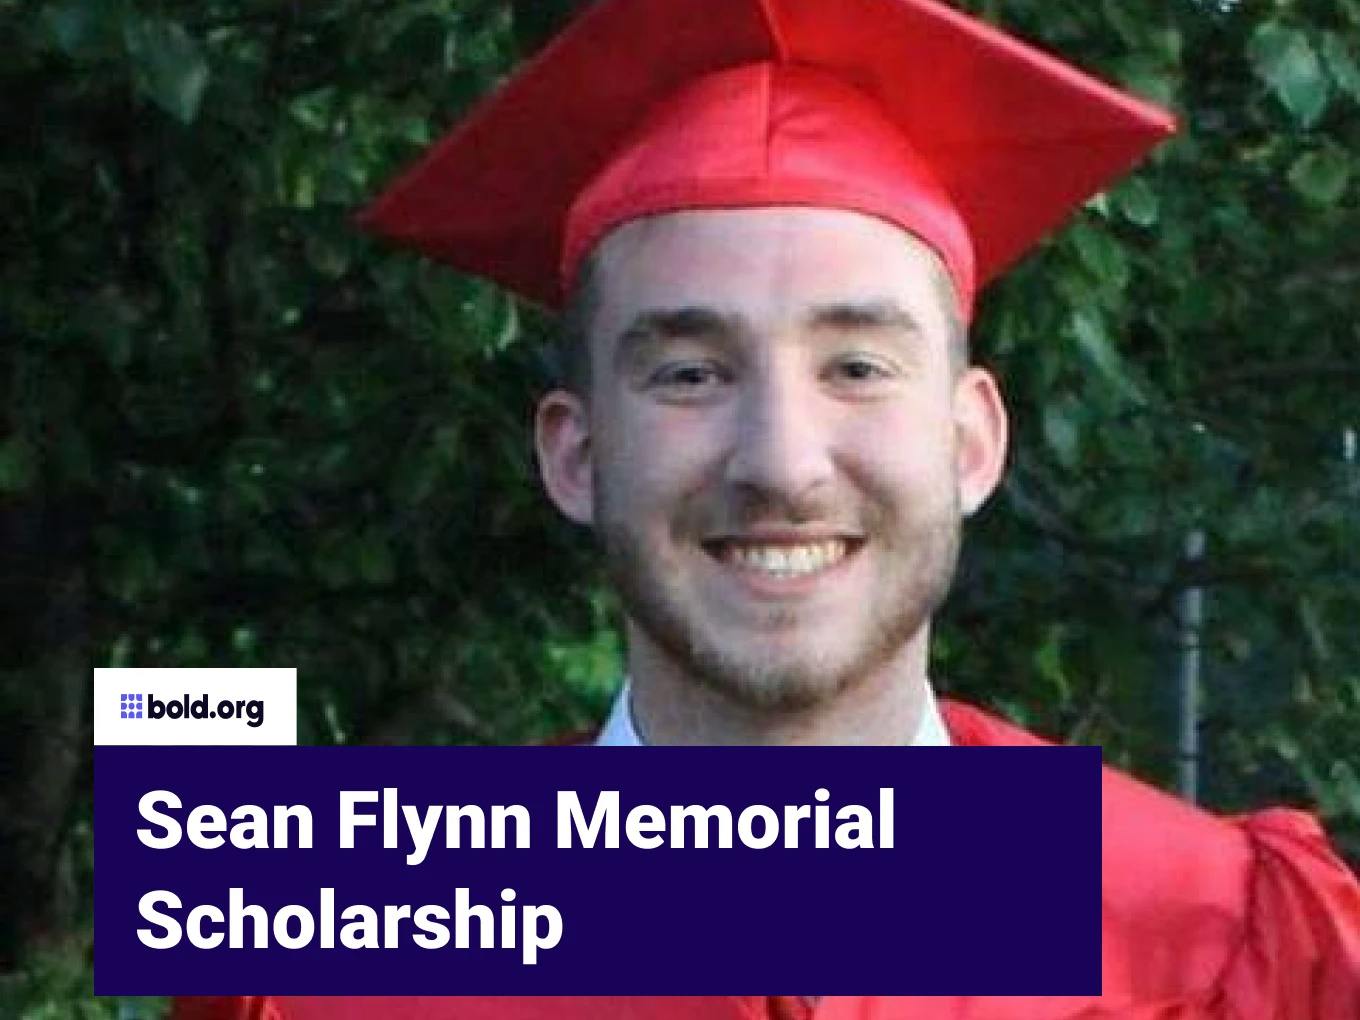 Sean Flynn Memorial Scholarship